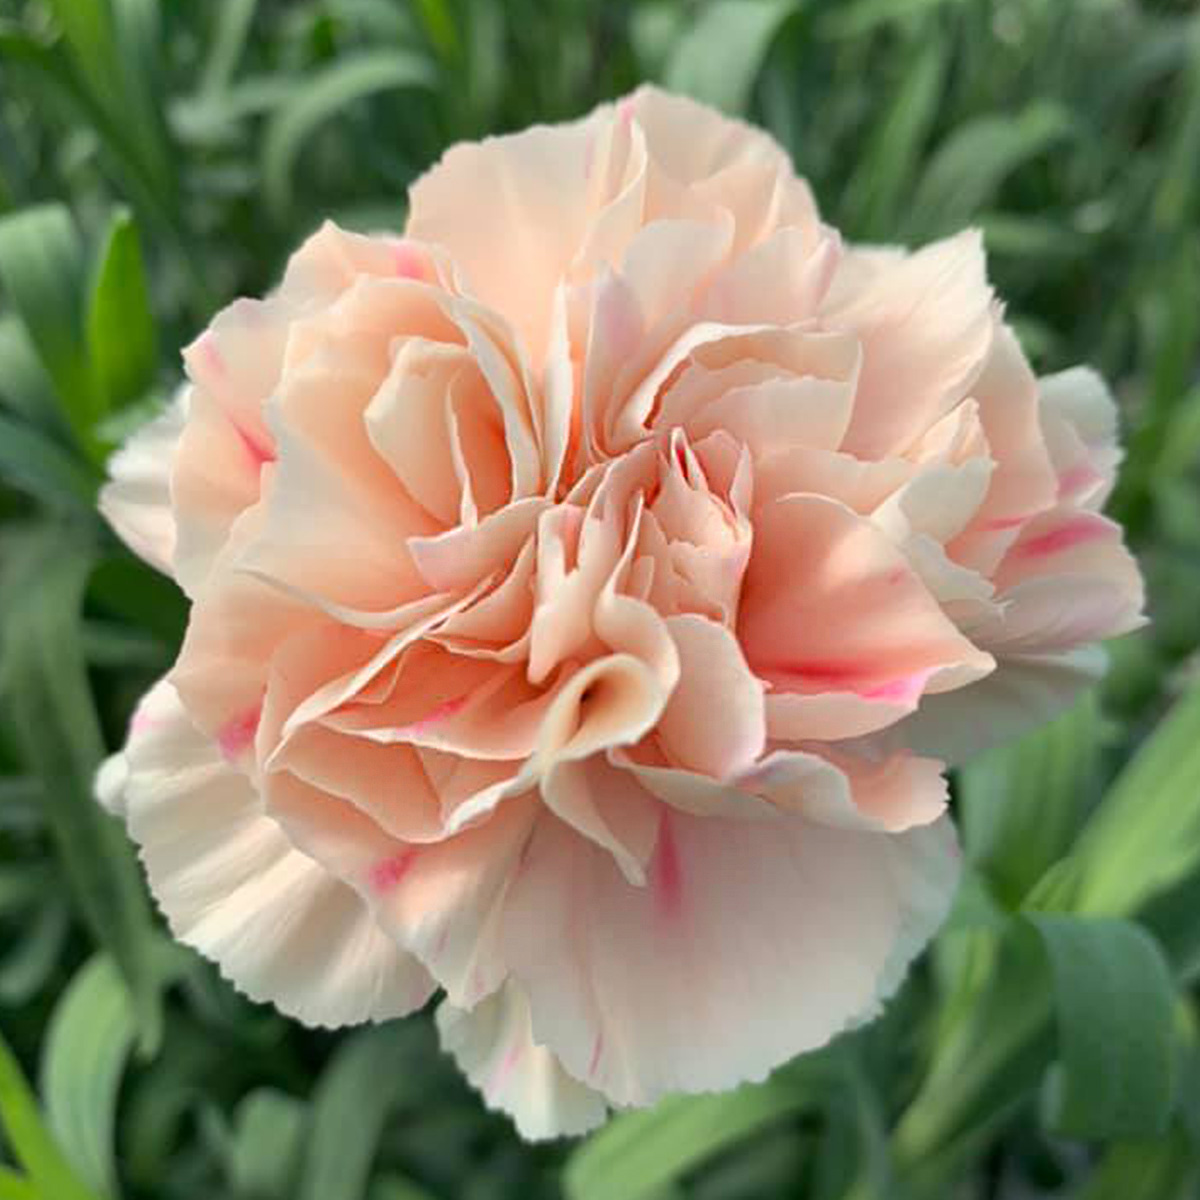 Divine Flowers Carnation - on Thursd